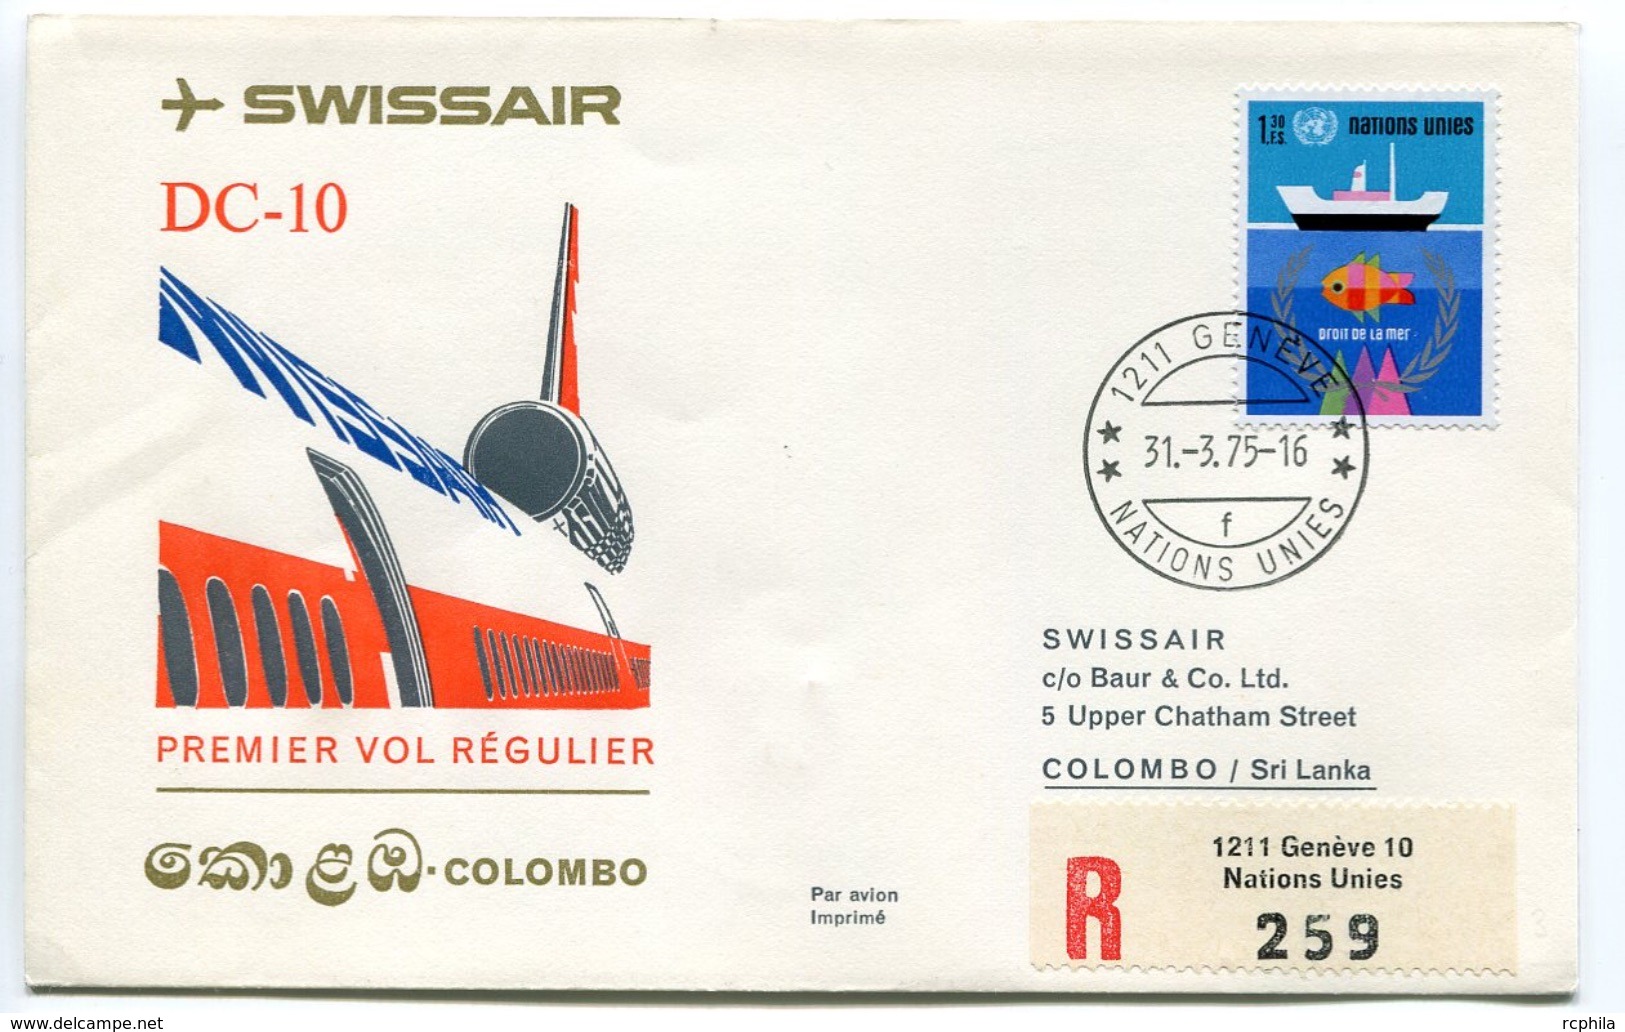 RC 6623 SUISSE 1975 1er VOL SWISSAIR GENEVE - COLOMBO SRI LANKA FFC LETTRE COVER - Erst- U. Sonderflugbriefe